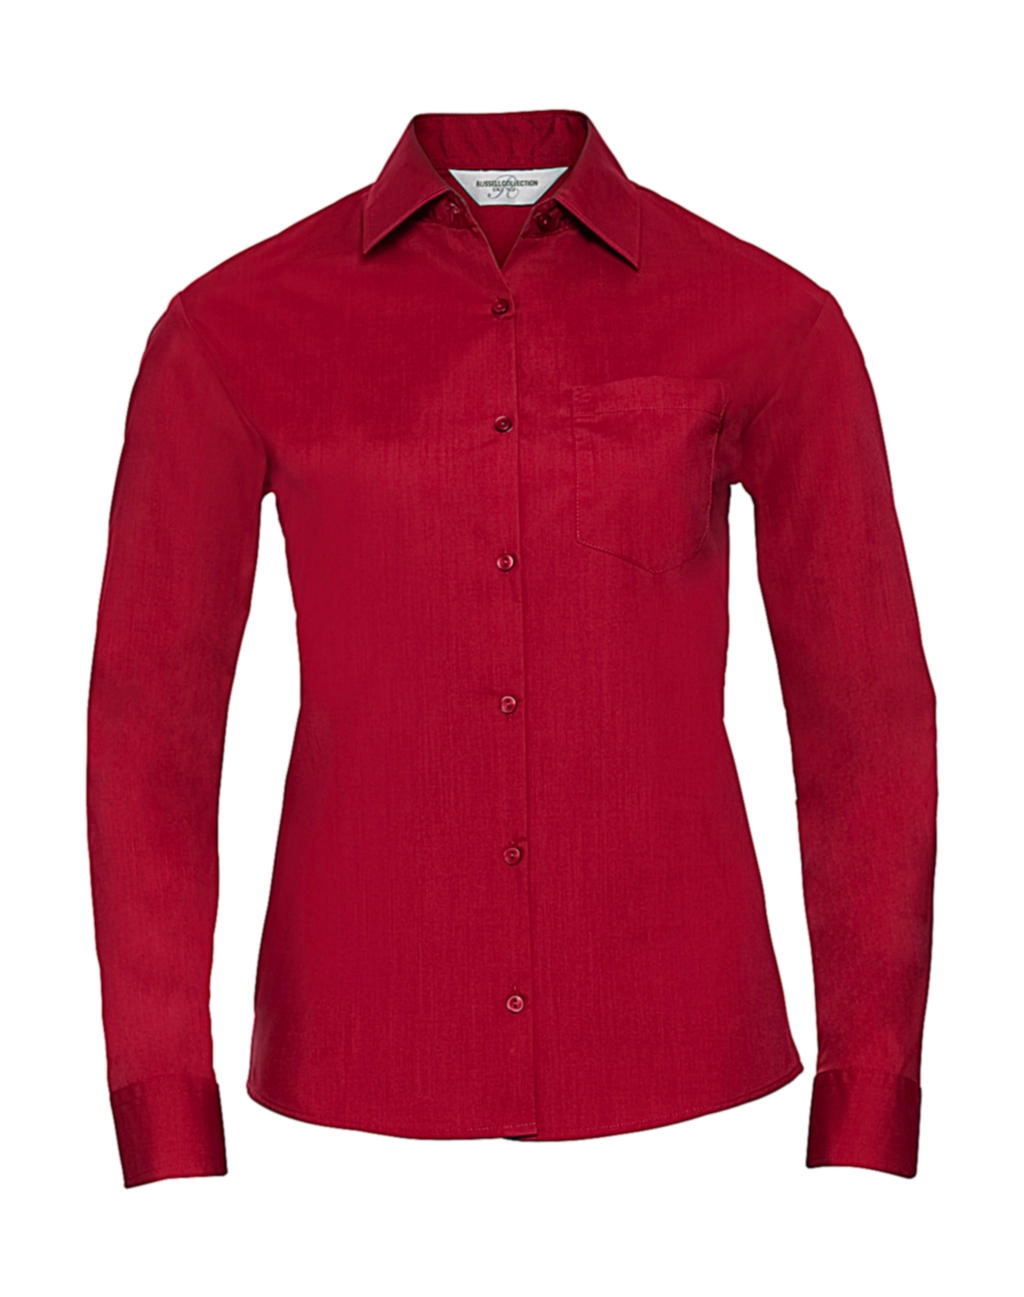 Ladies` LS Poplin Shirt zum Besticken und Bedrucken in der Farbe Classic Red mit Ihren Logo, Schriftzug oder Motiv.